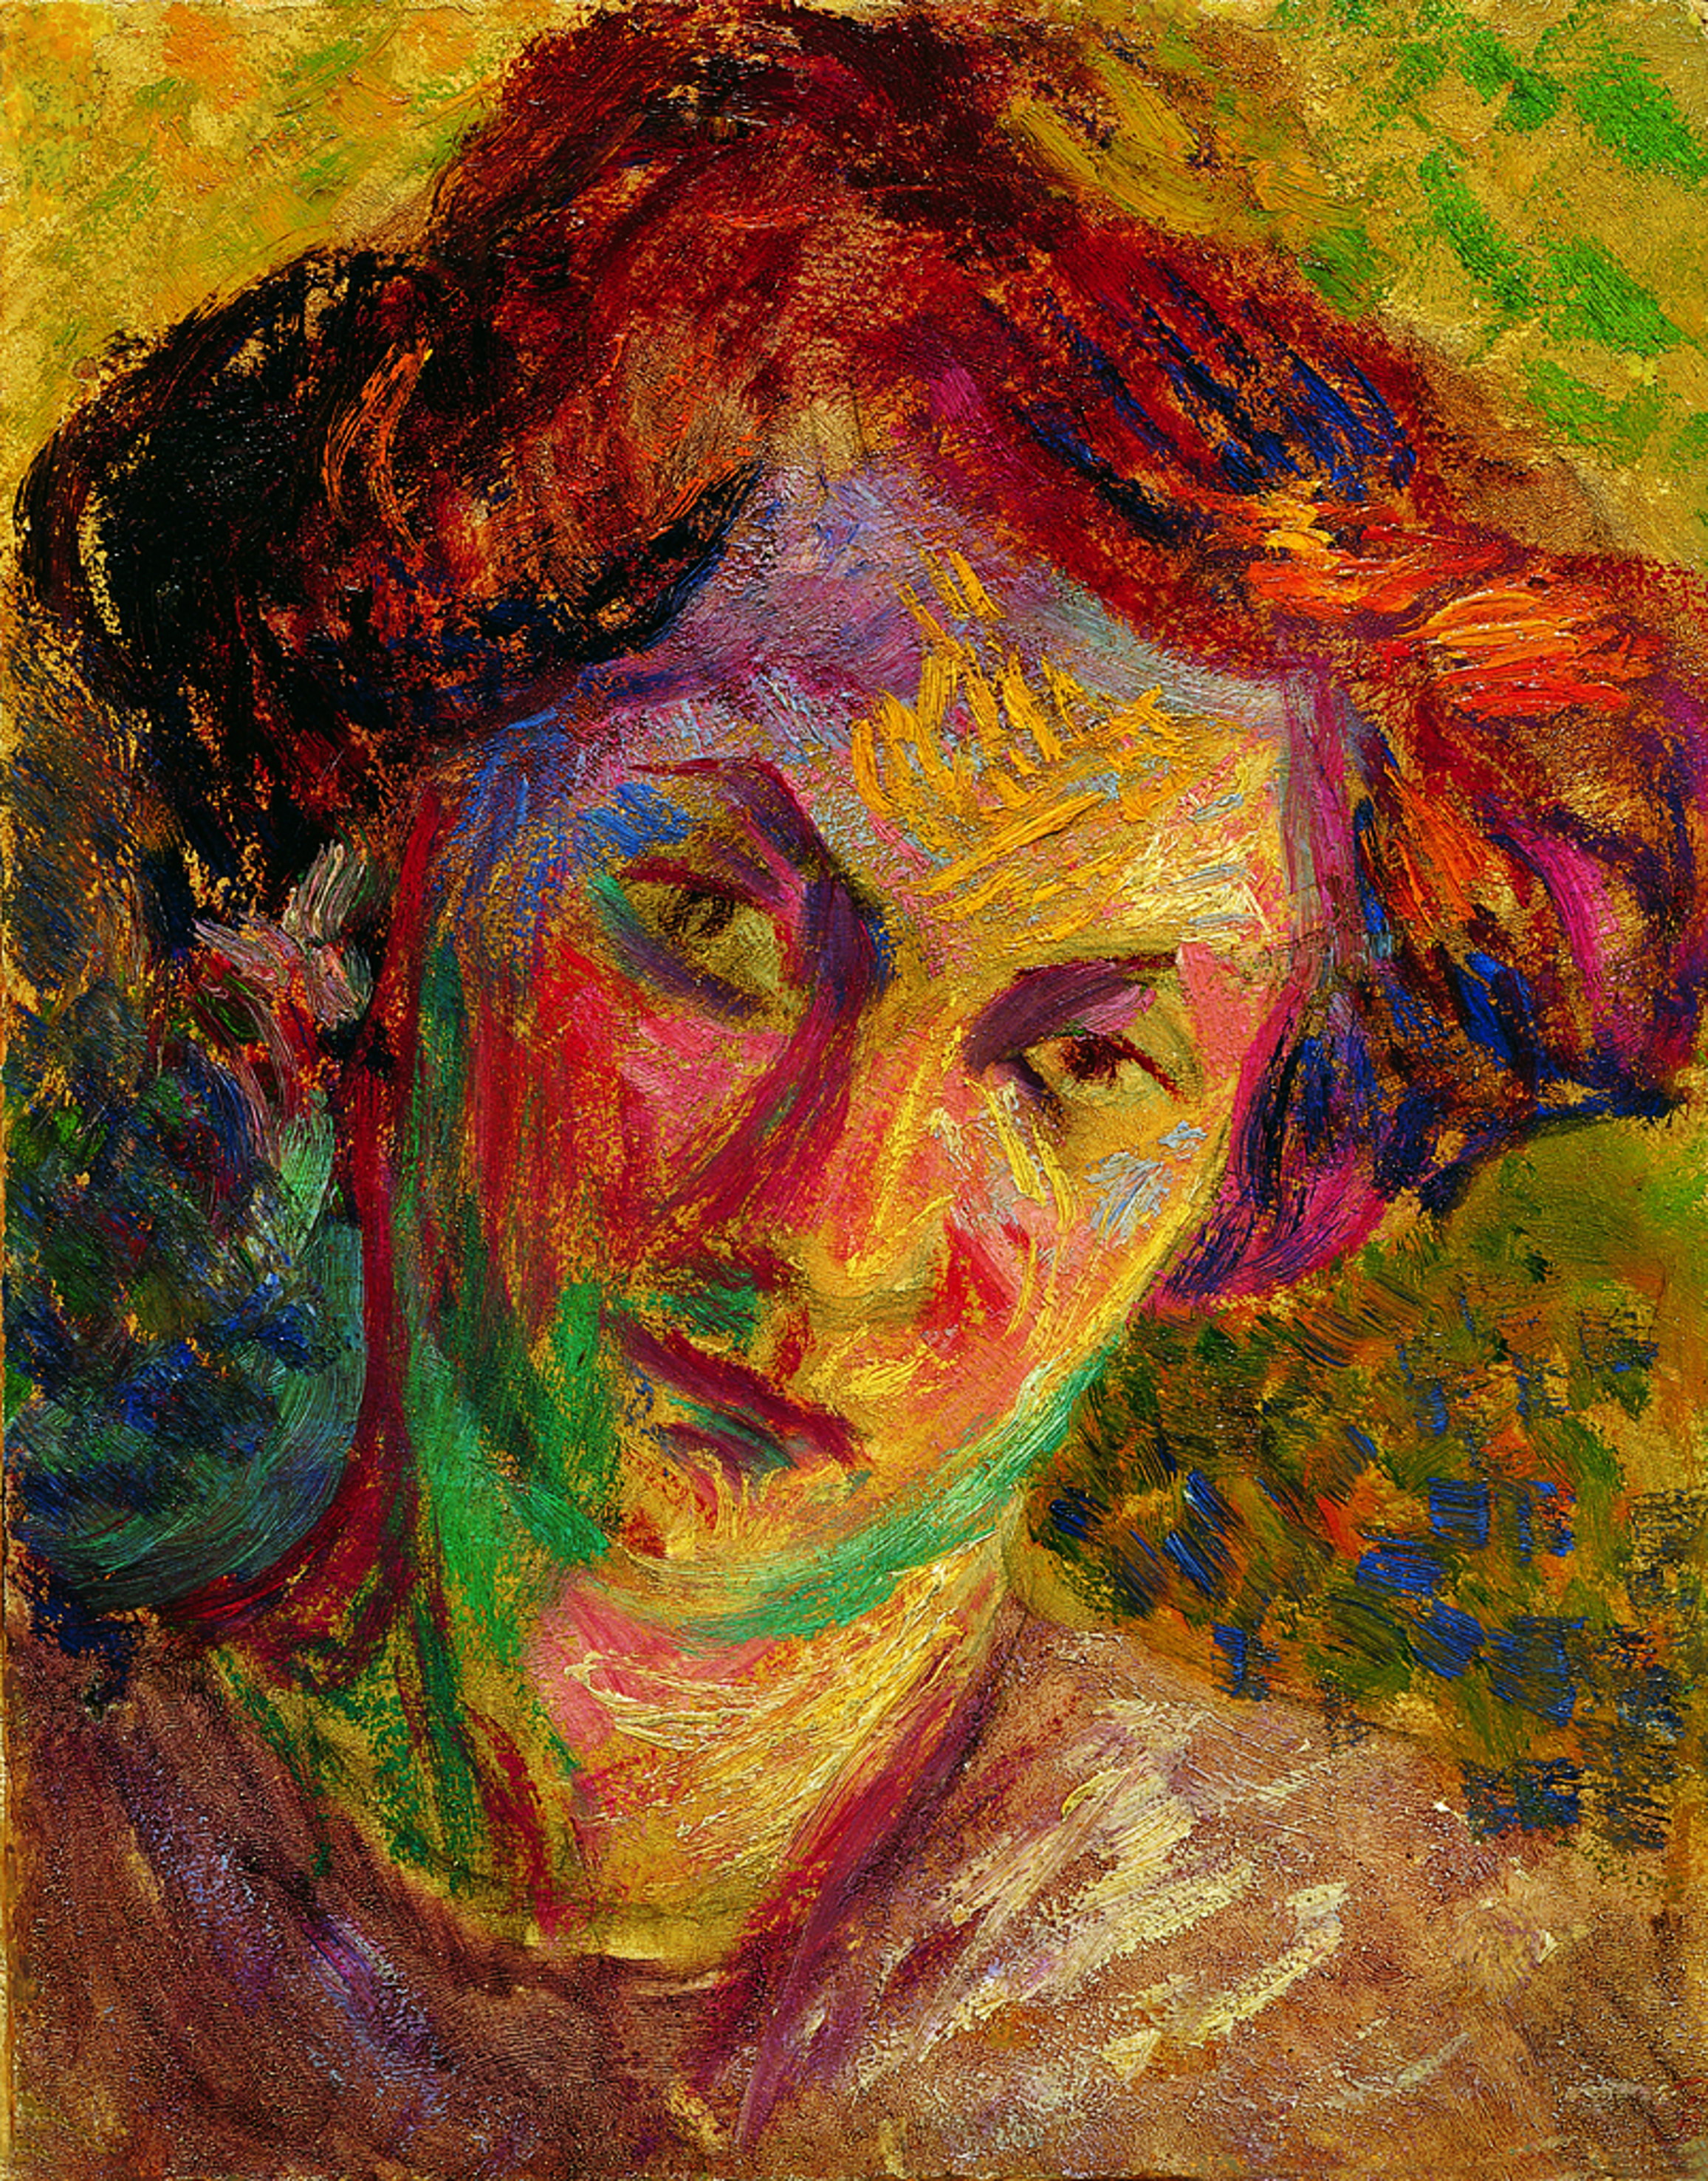 Umberto Boccioni
Ritratto di donna
1909 -1910 ca.
Olio su tela
21 x 24 cm
Palazzo Ricci, Fondazione Cassa di Risparmio di Macerata